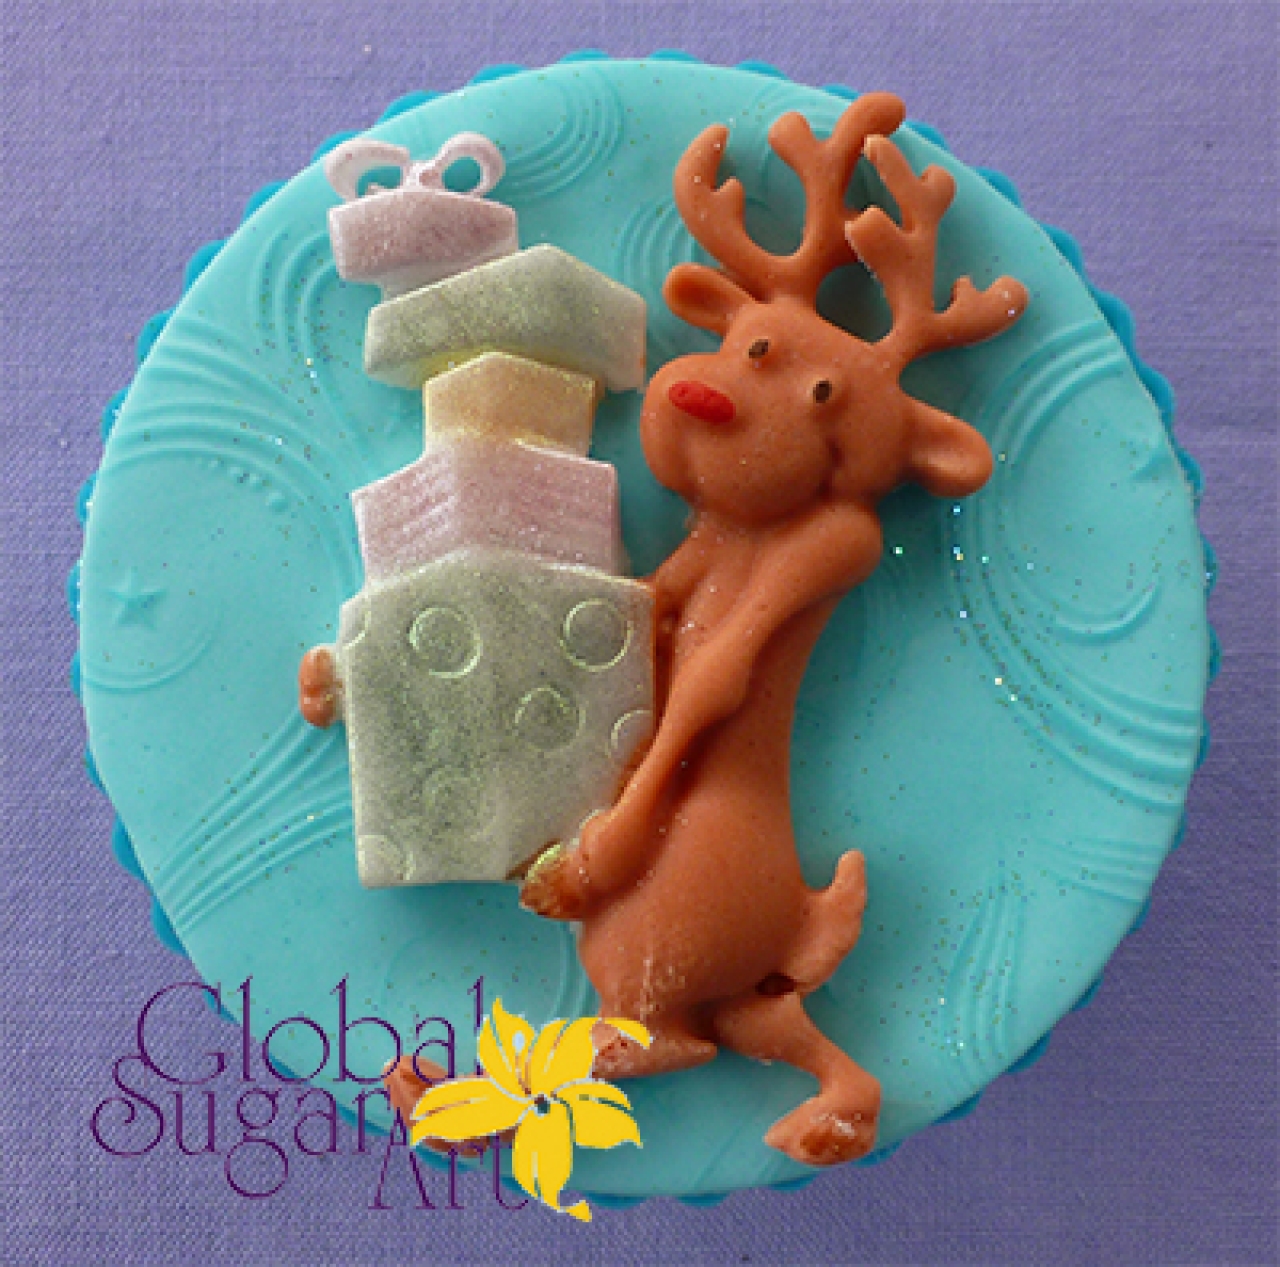 Global Sugar Art "Rentier mit Geschenke", 6,2 x 4,2 cm